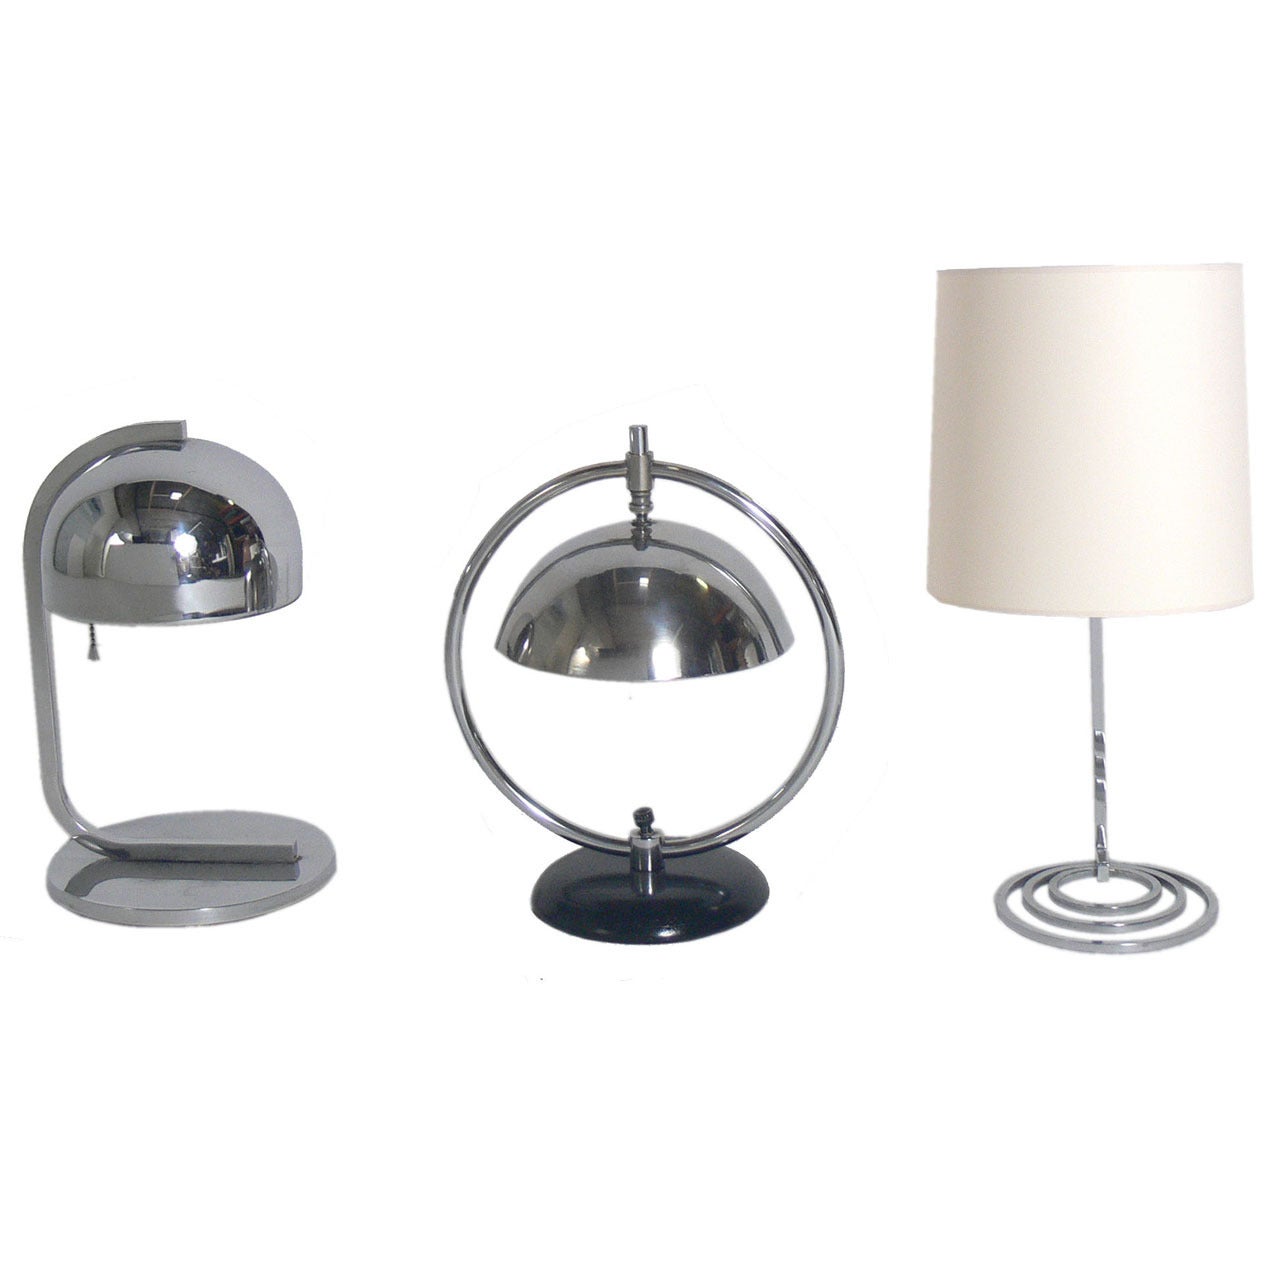 Art Deco Desk Lamps